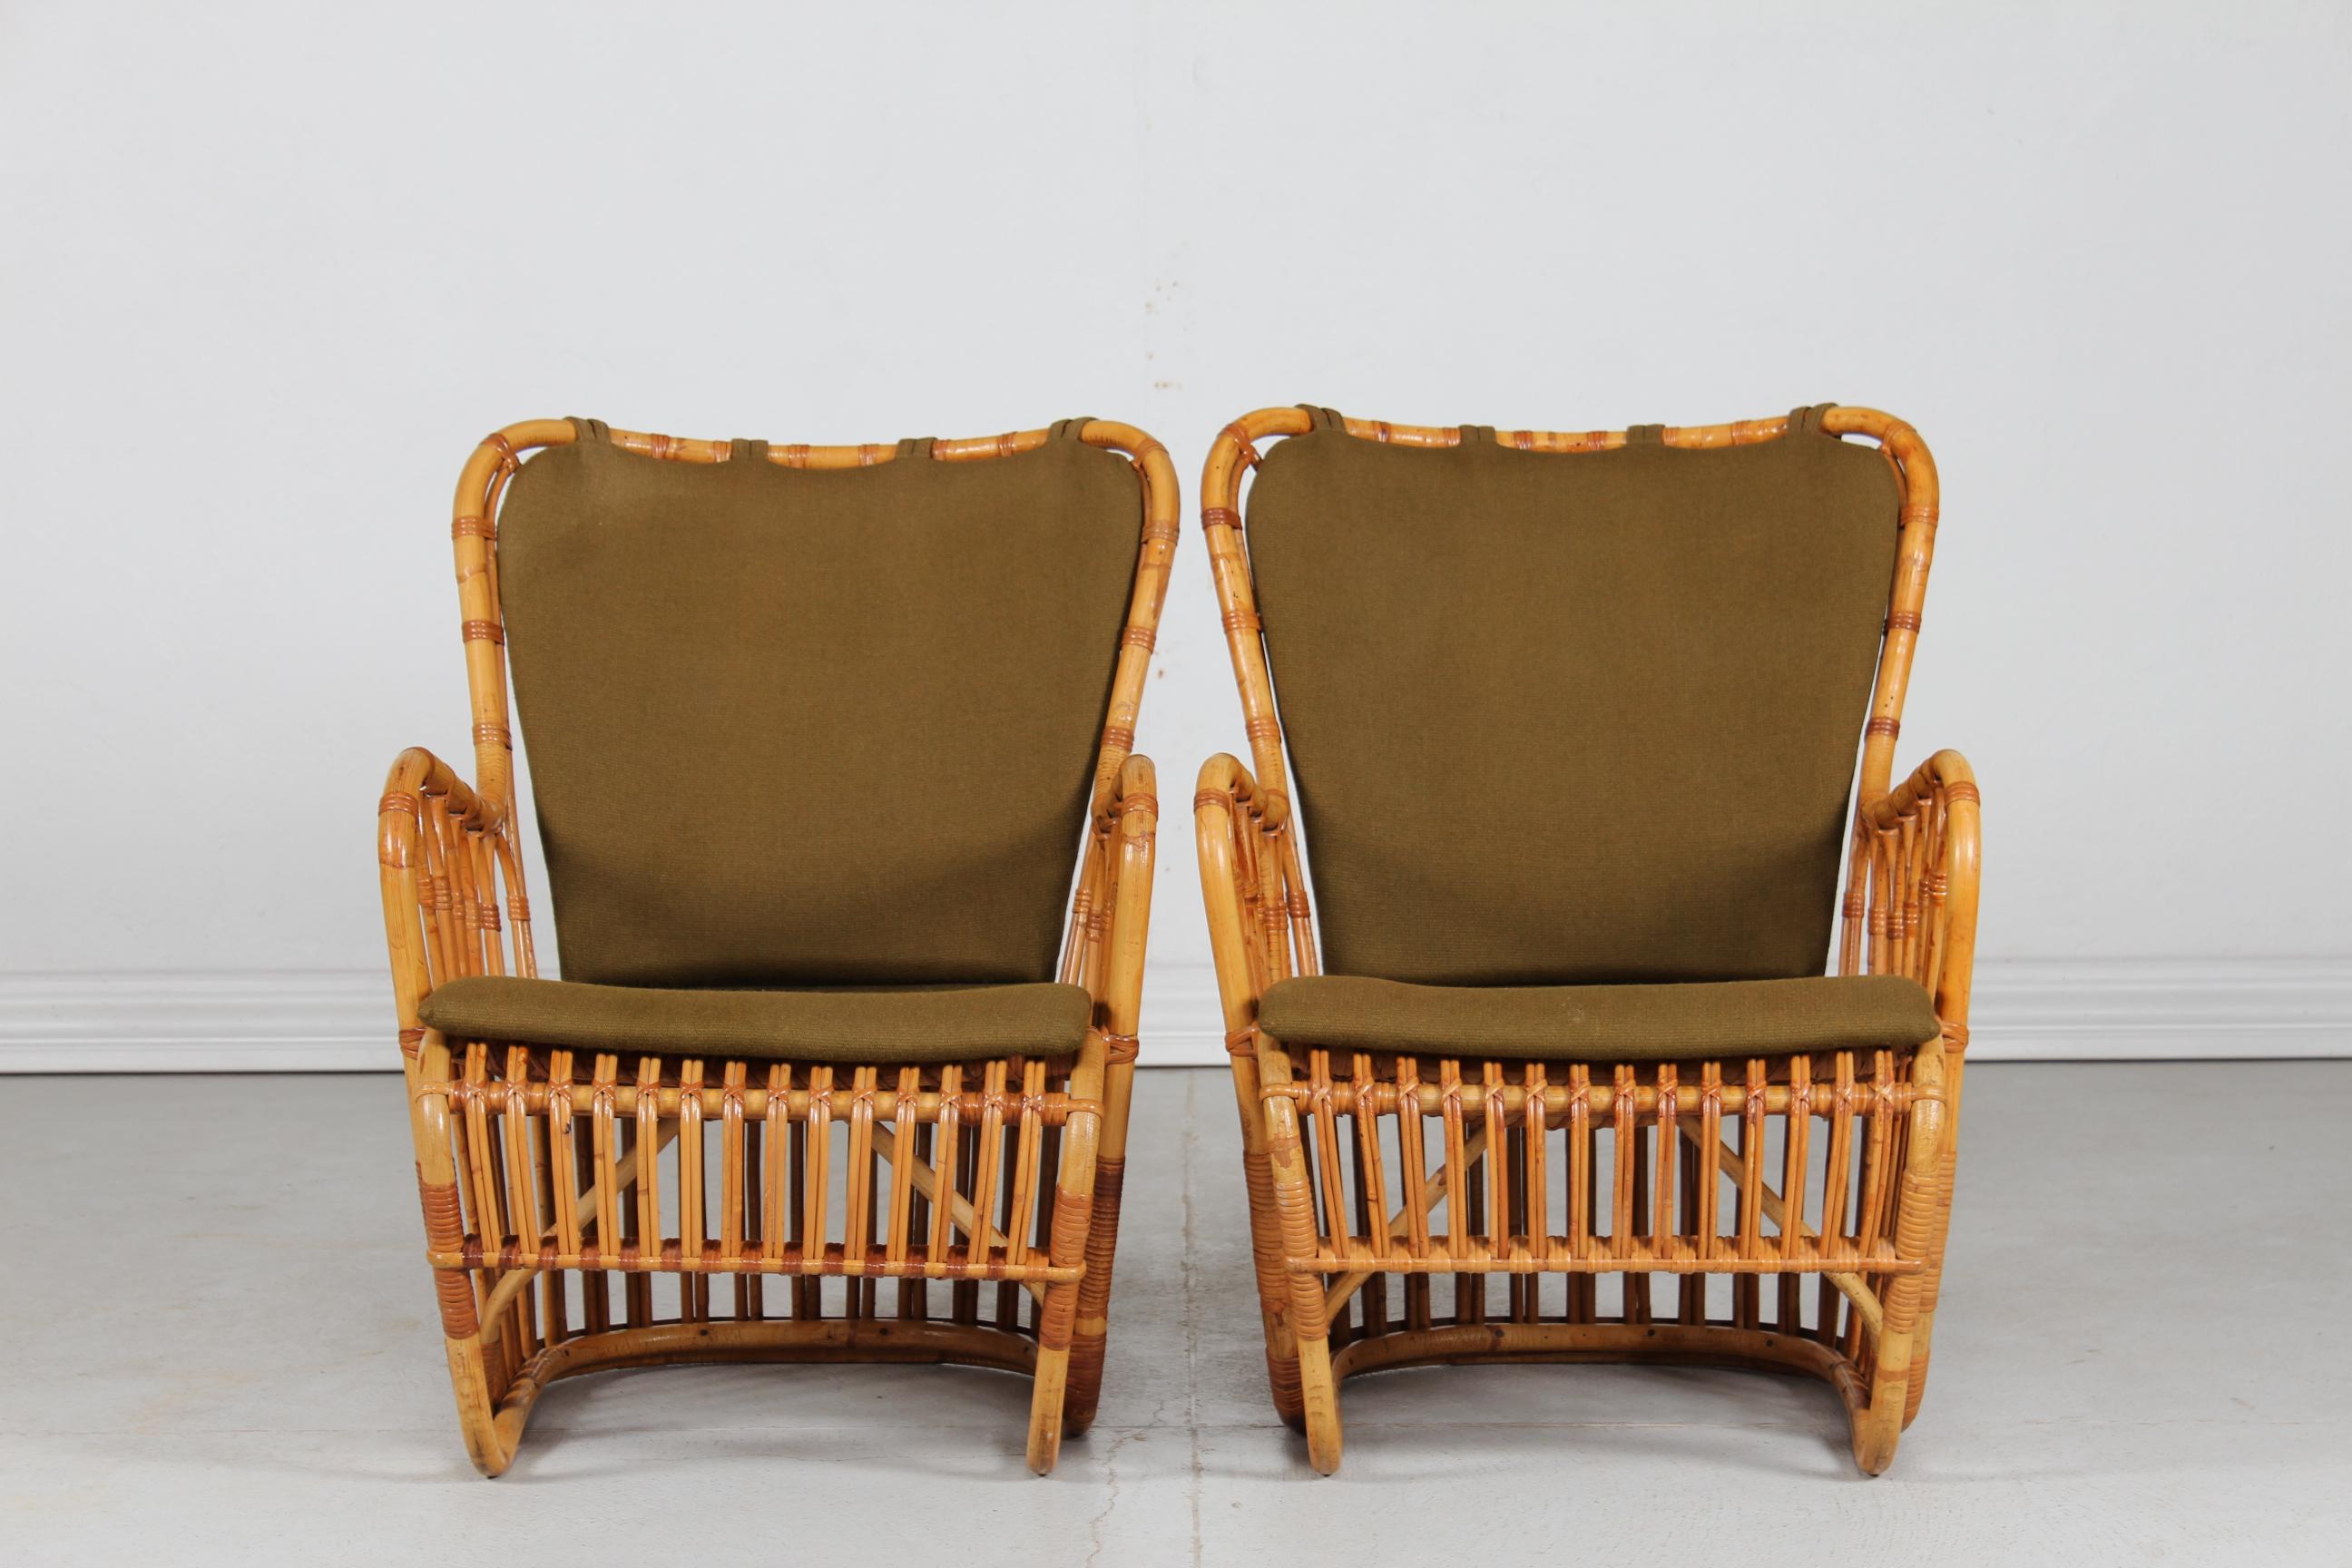 Tove Kindt-Larsen (1906-94) paire de fauteuils en bambou vintage modèle Tulip lancé en 1937.
Ces chaises ont été fabriquées par R. Wengler à Copenhague, au Danemark, dans les années 1950.
Coussins avec revêtement vert.

Mesures : Hauteur 78